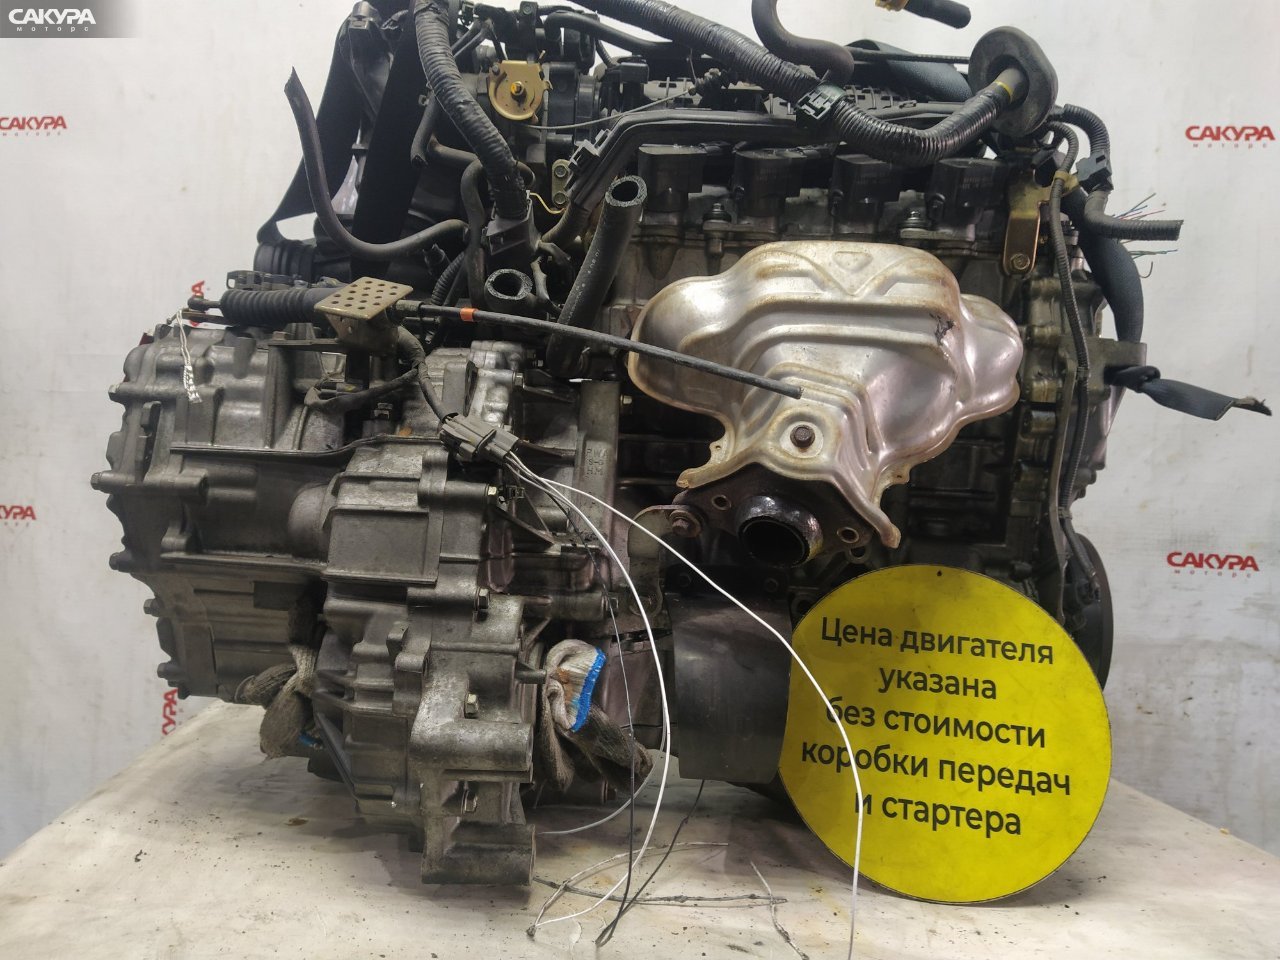 Двигатель Honda FIT GD1 L13A: купить в Сакура Красноярск.